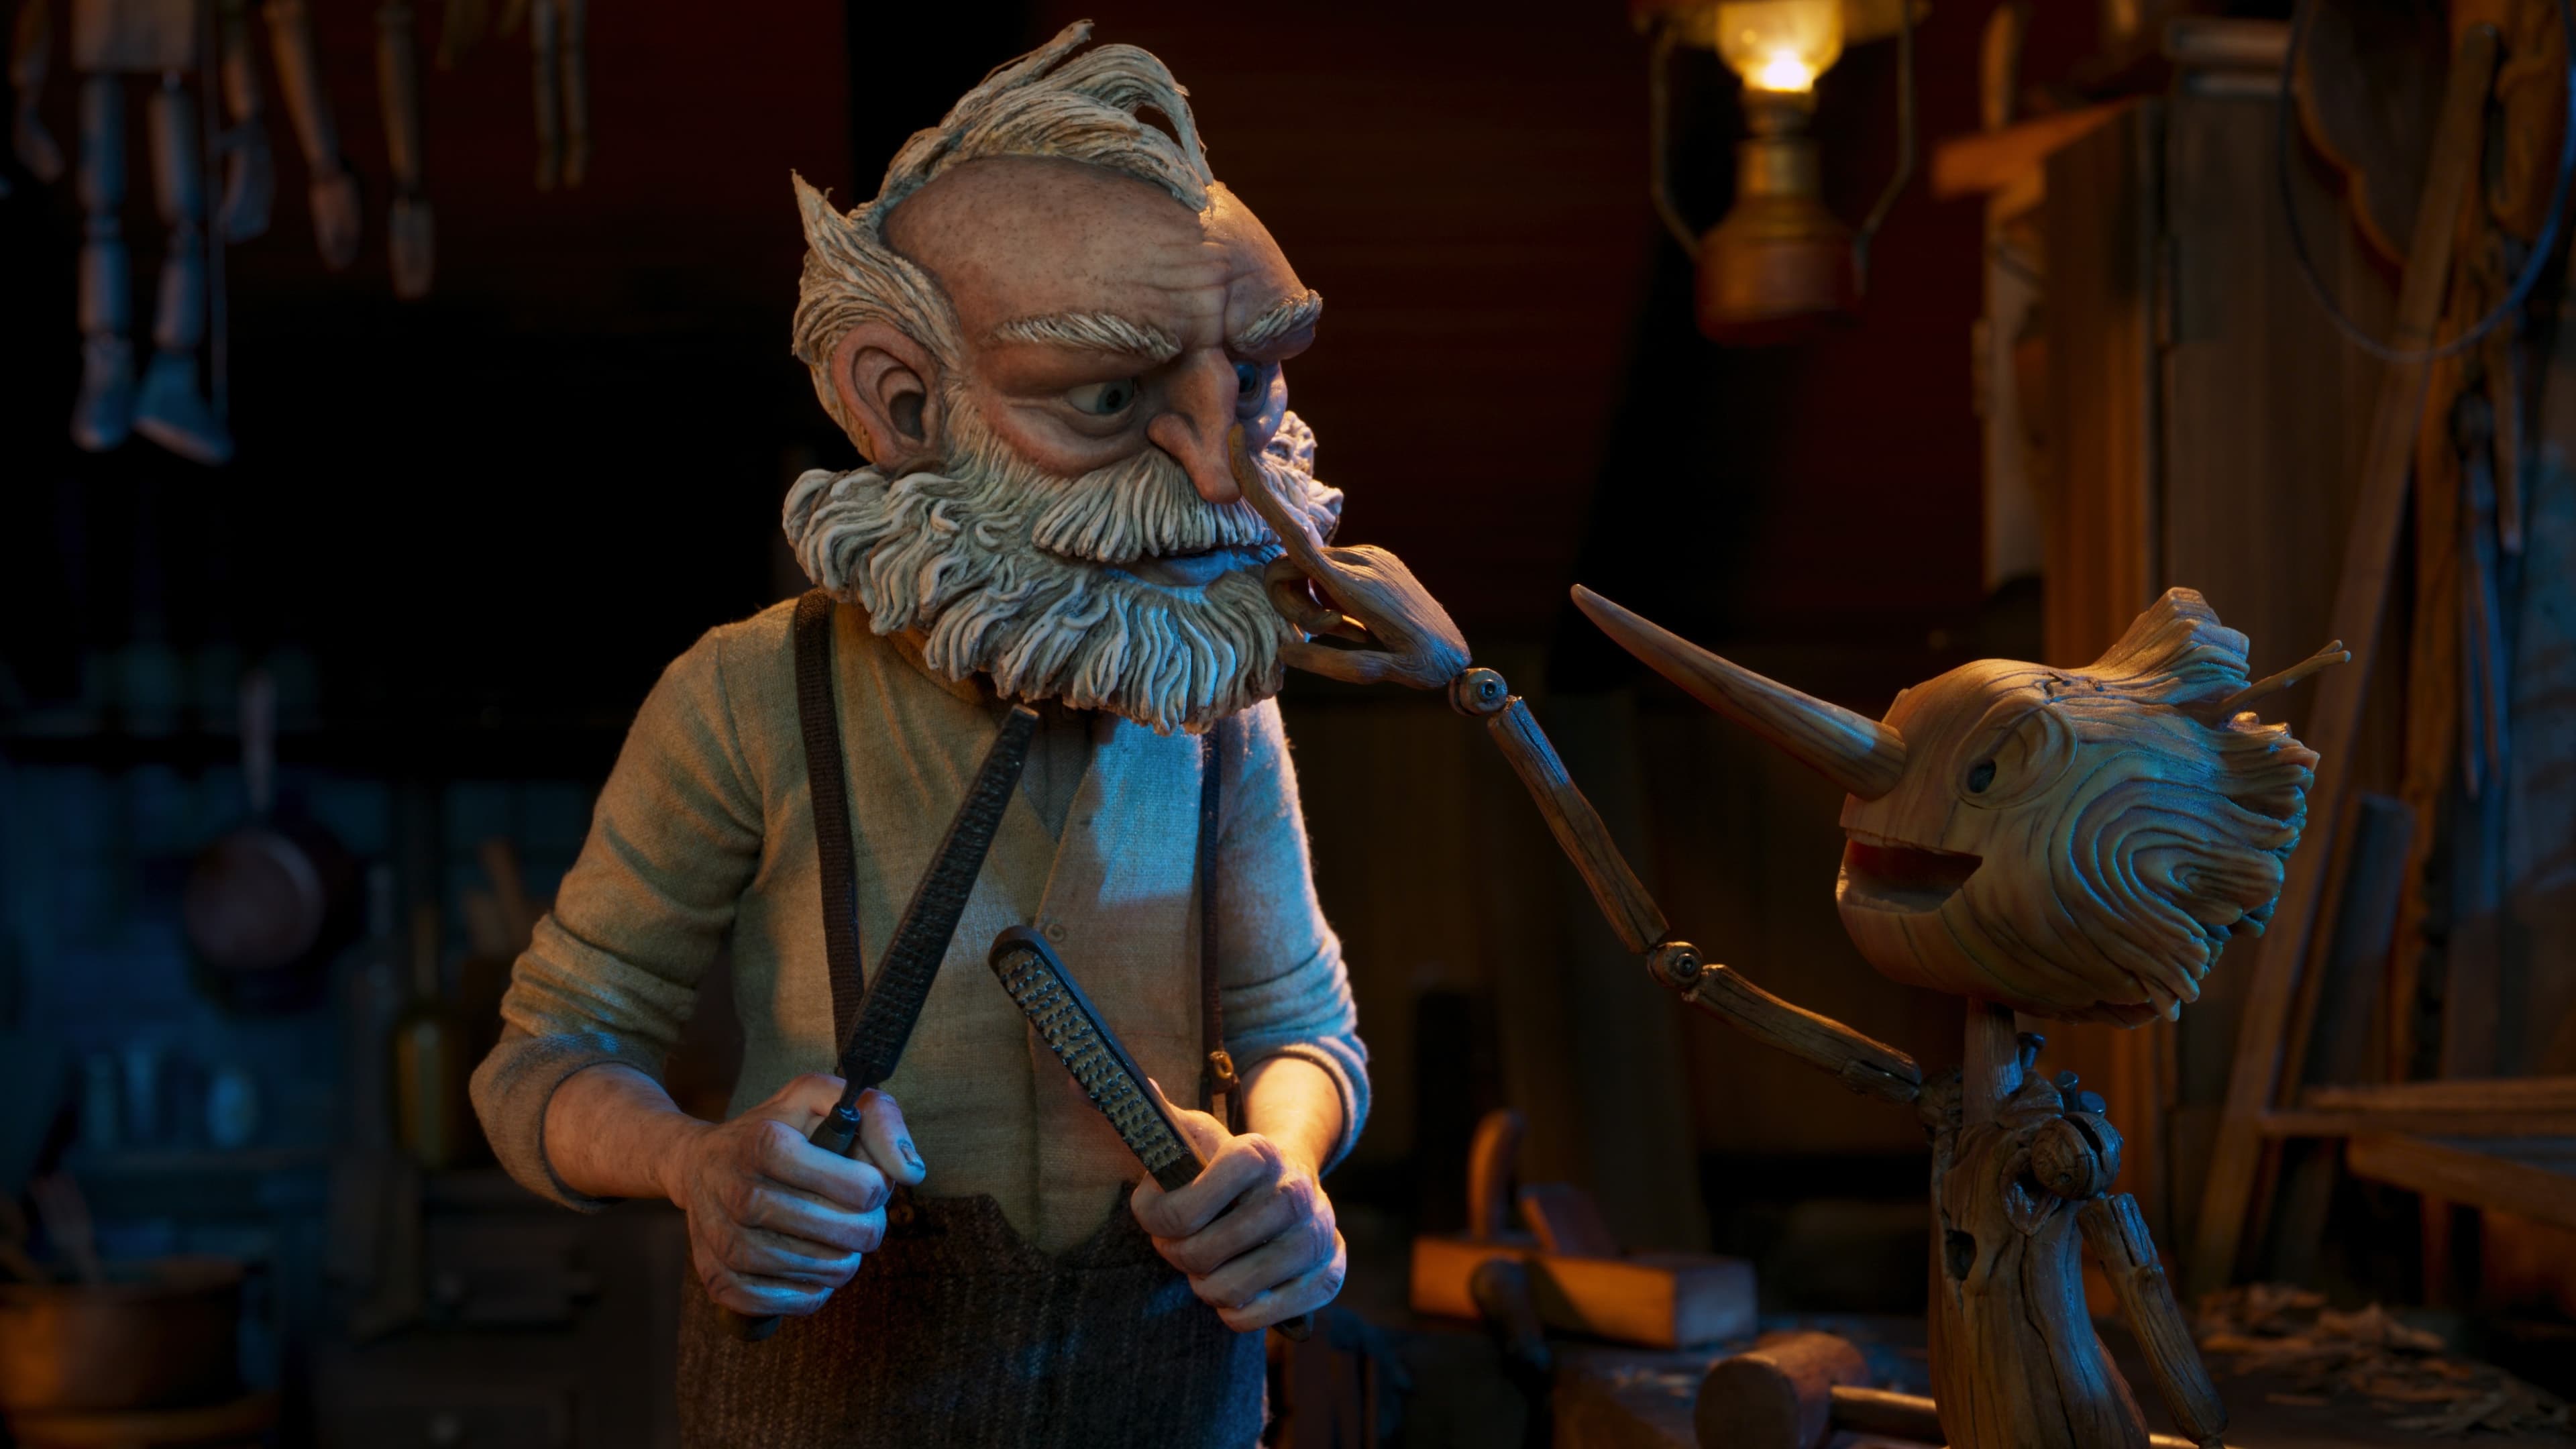 Pinocchio di Guillermo del Toro - film